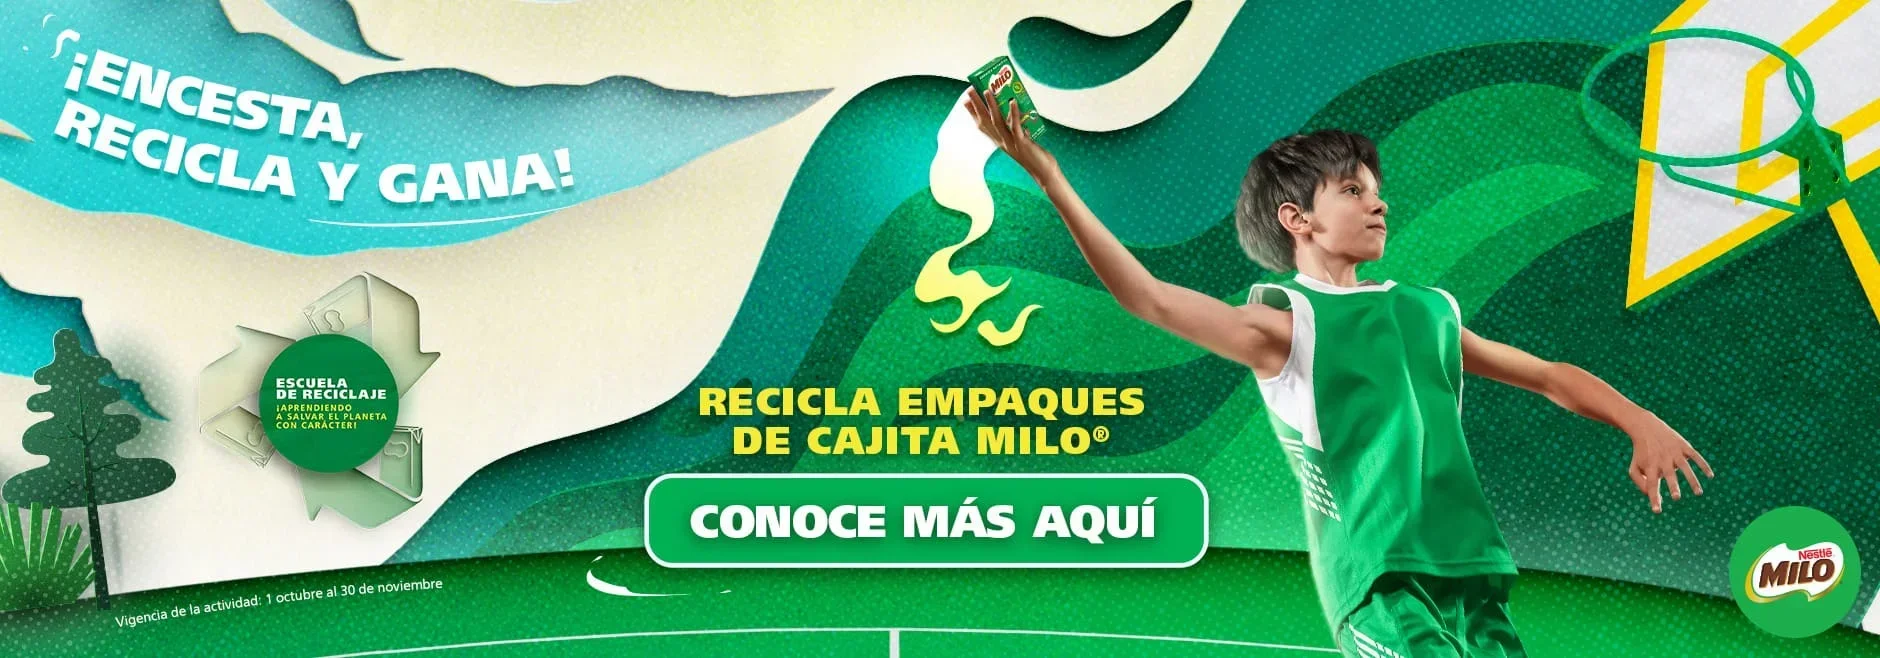 Deportes con material reciclado: ejercicios sostenibles y divertidos